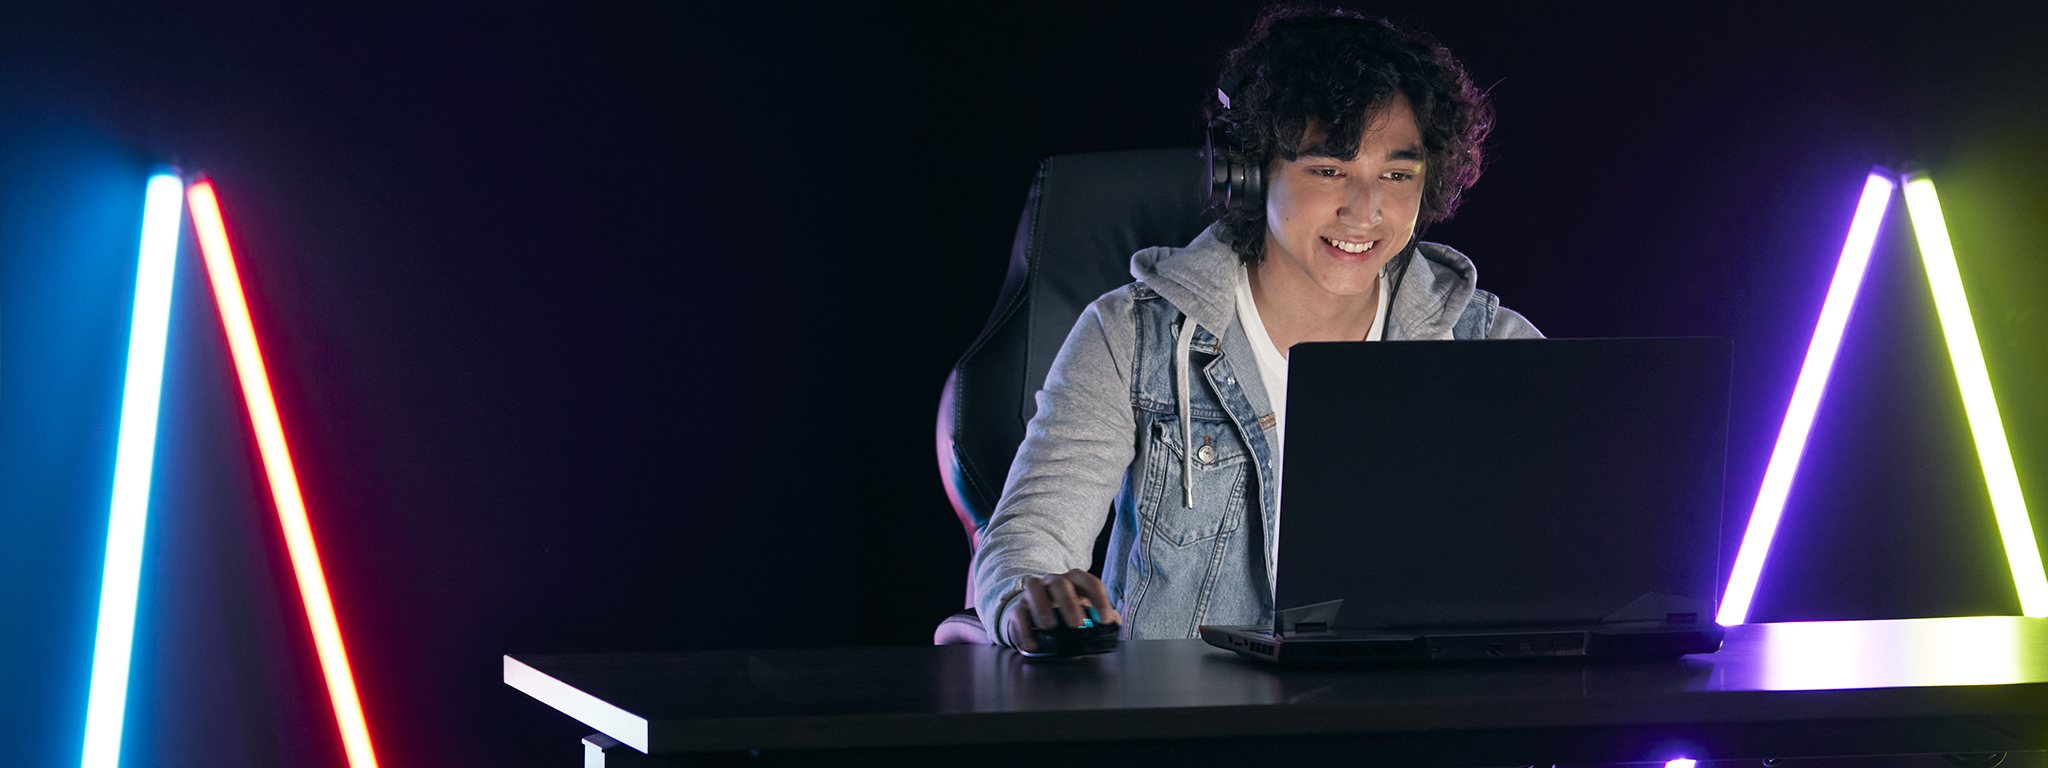 un joven jugador con su portátil en una habitación a oscuras